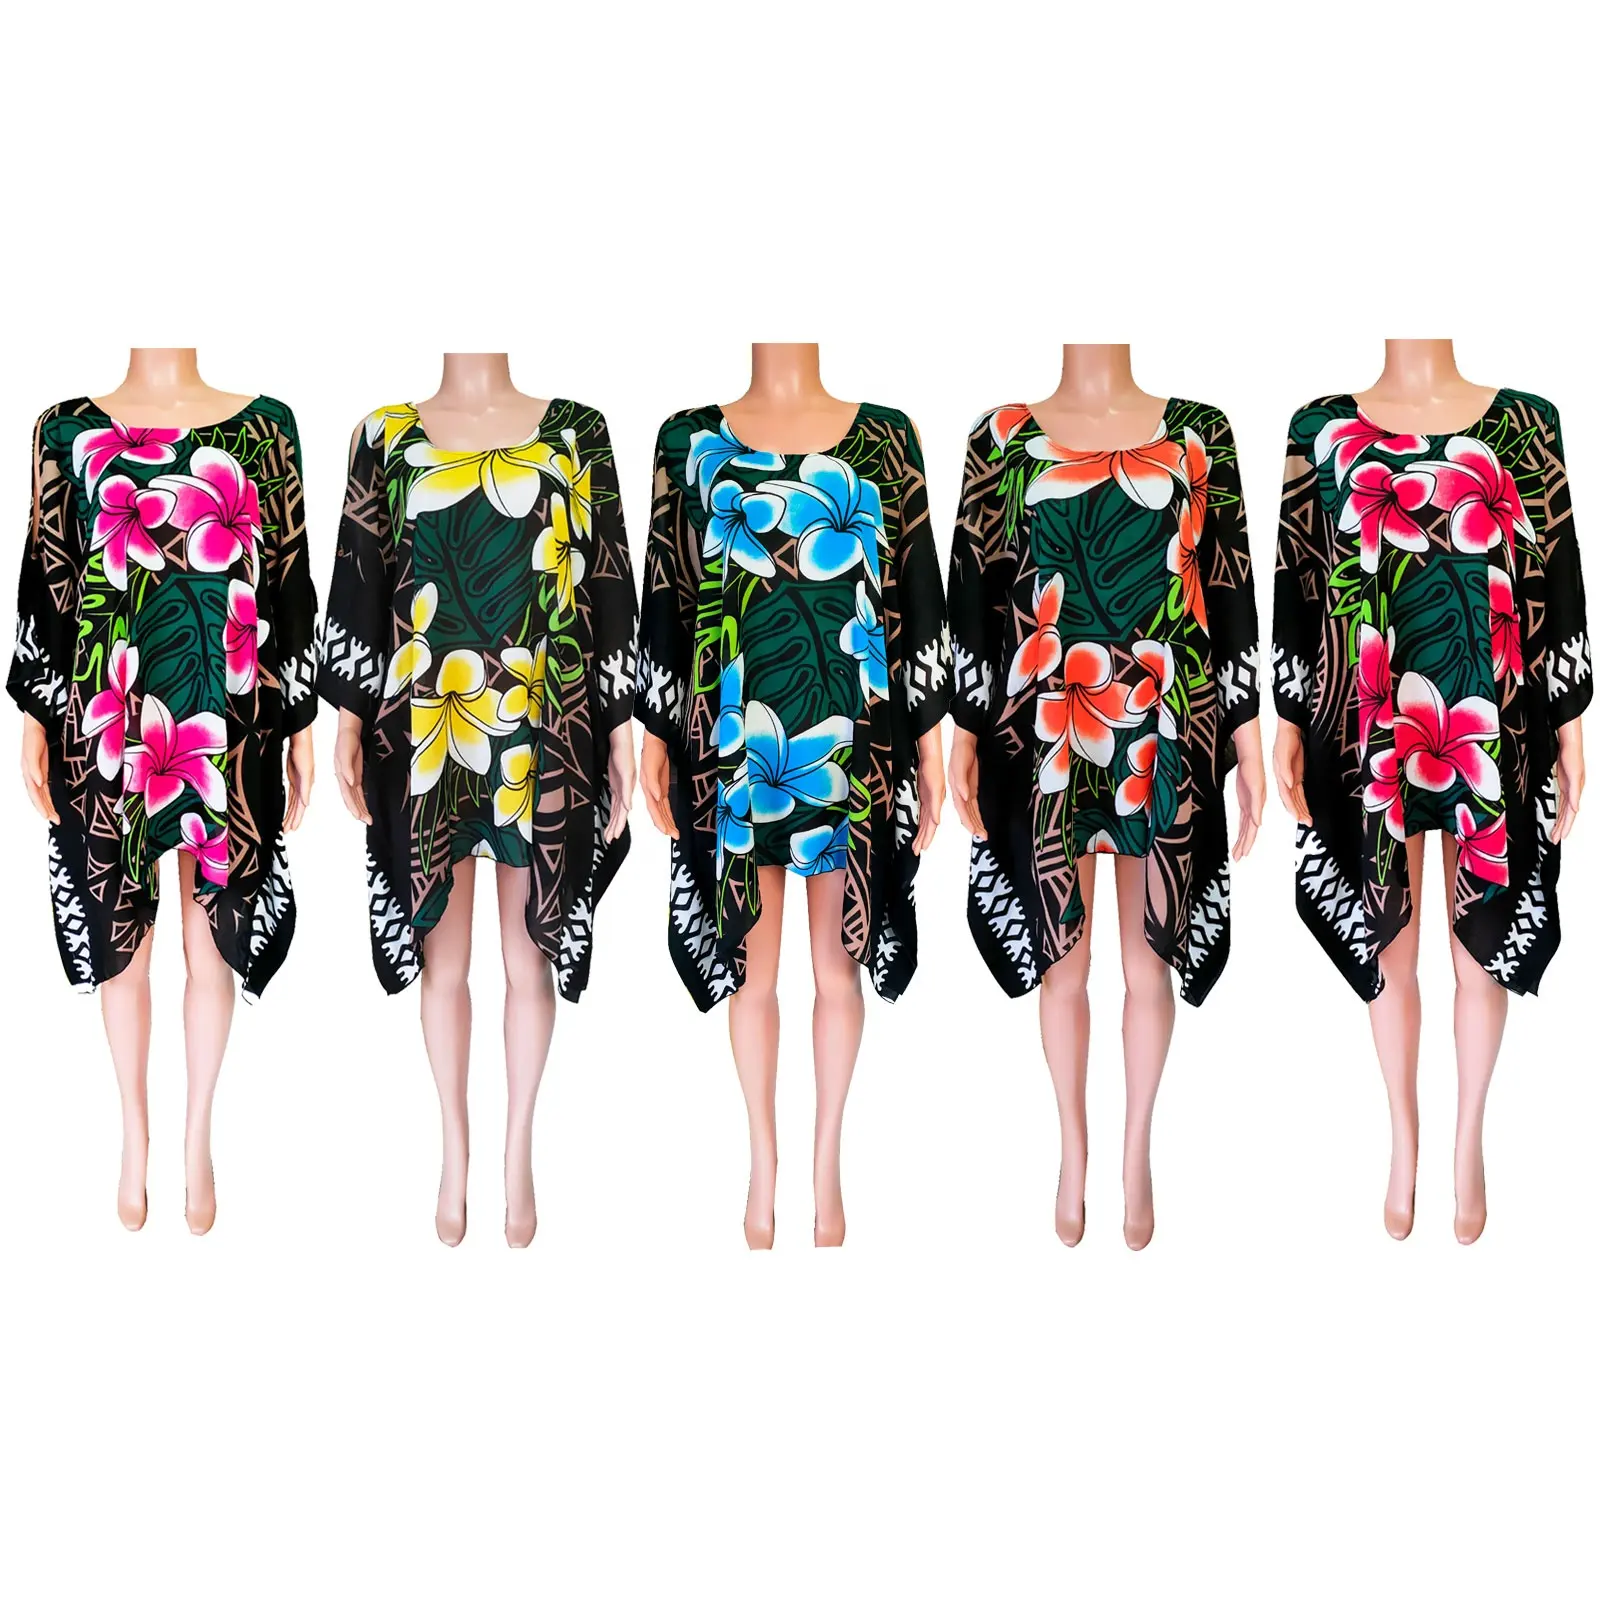 NEU Design gedruckt Frauen lässig Poncho Kleid Big Plume ria Flower Printed Summer Beach Kleider